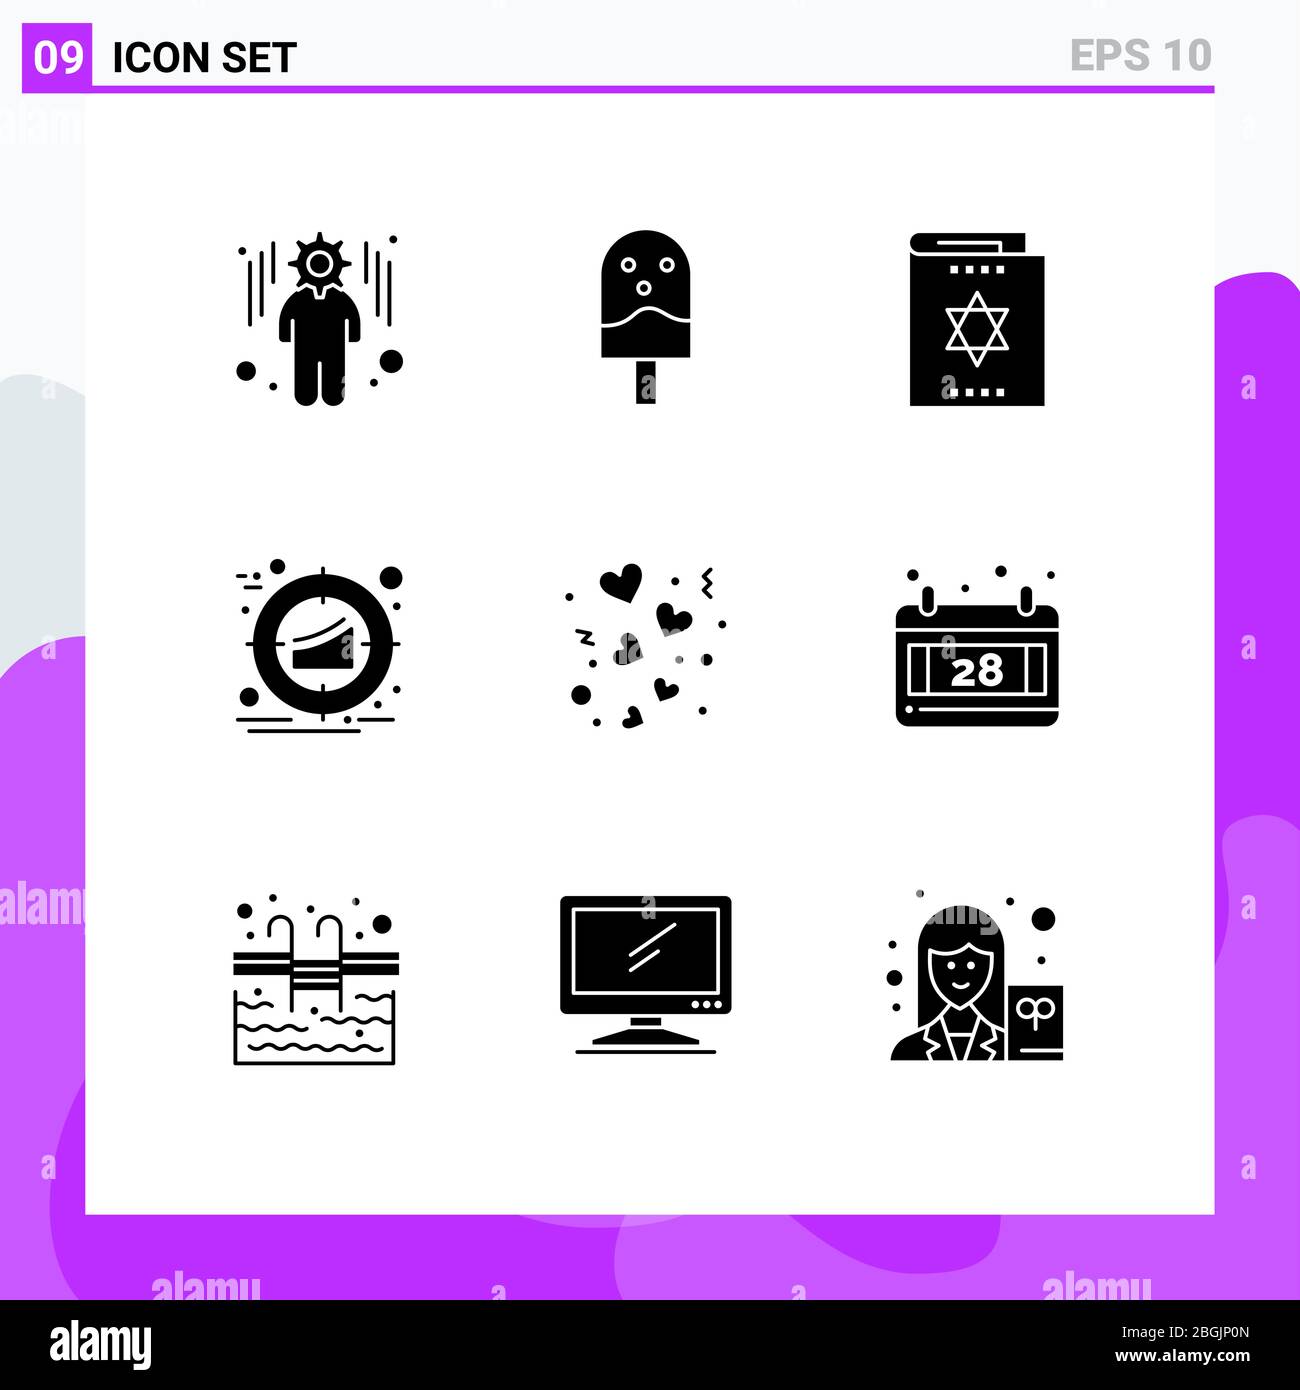 Ensemble de 9 icônes d'interface utilisateur modernes symboles signes pour jour, produit, harry potter, marketing, cible Editable Vector Design Elements Illustration de Vecteur